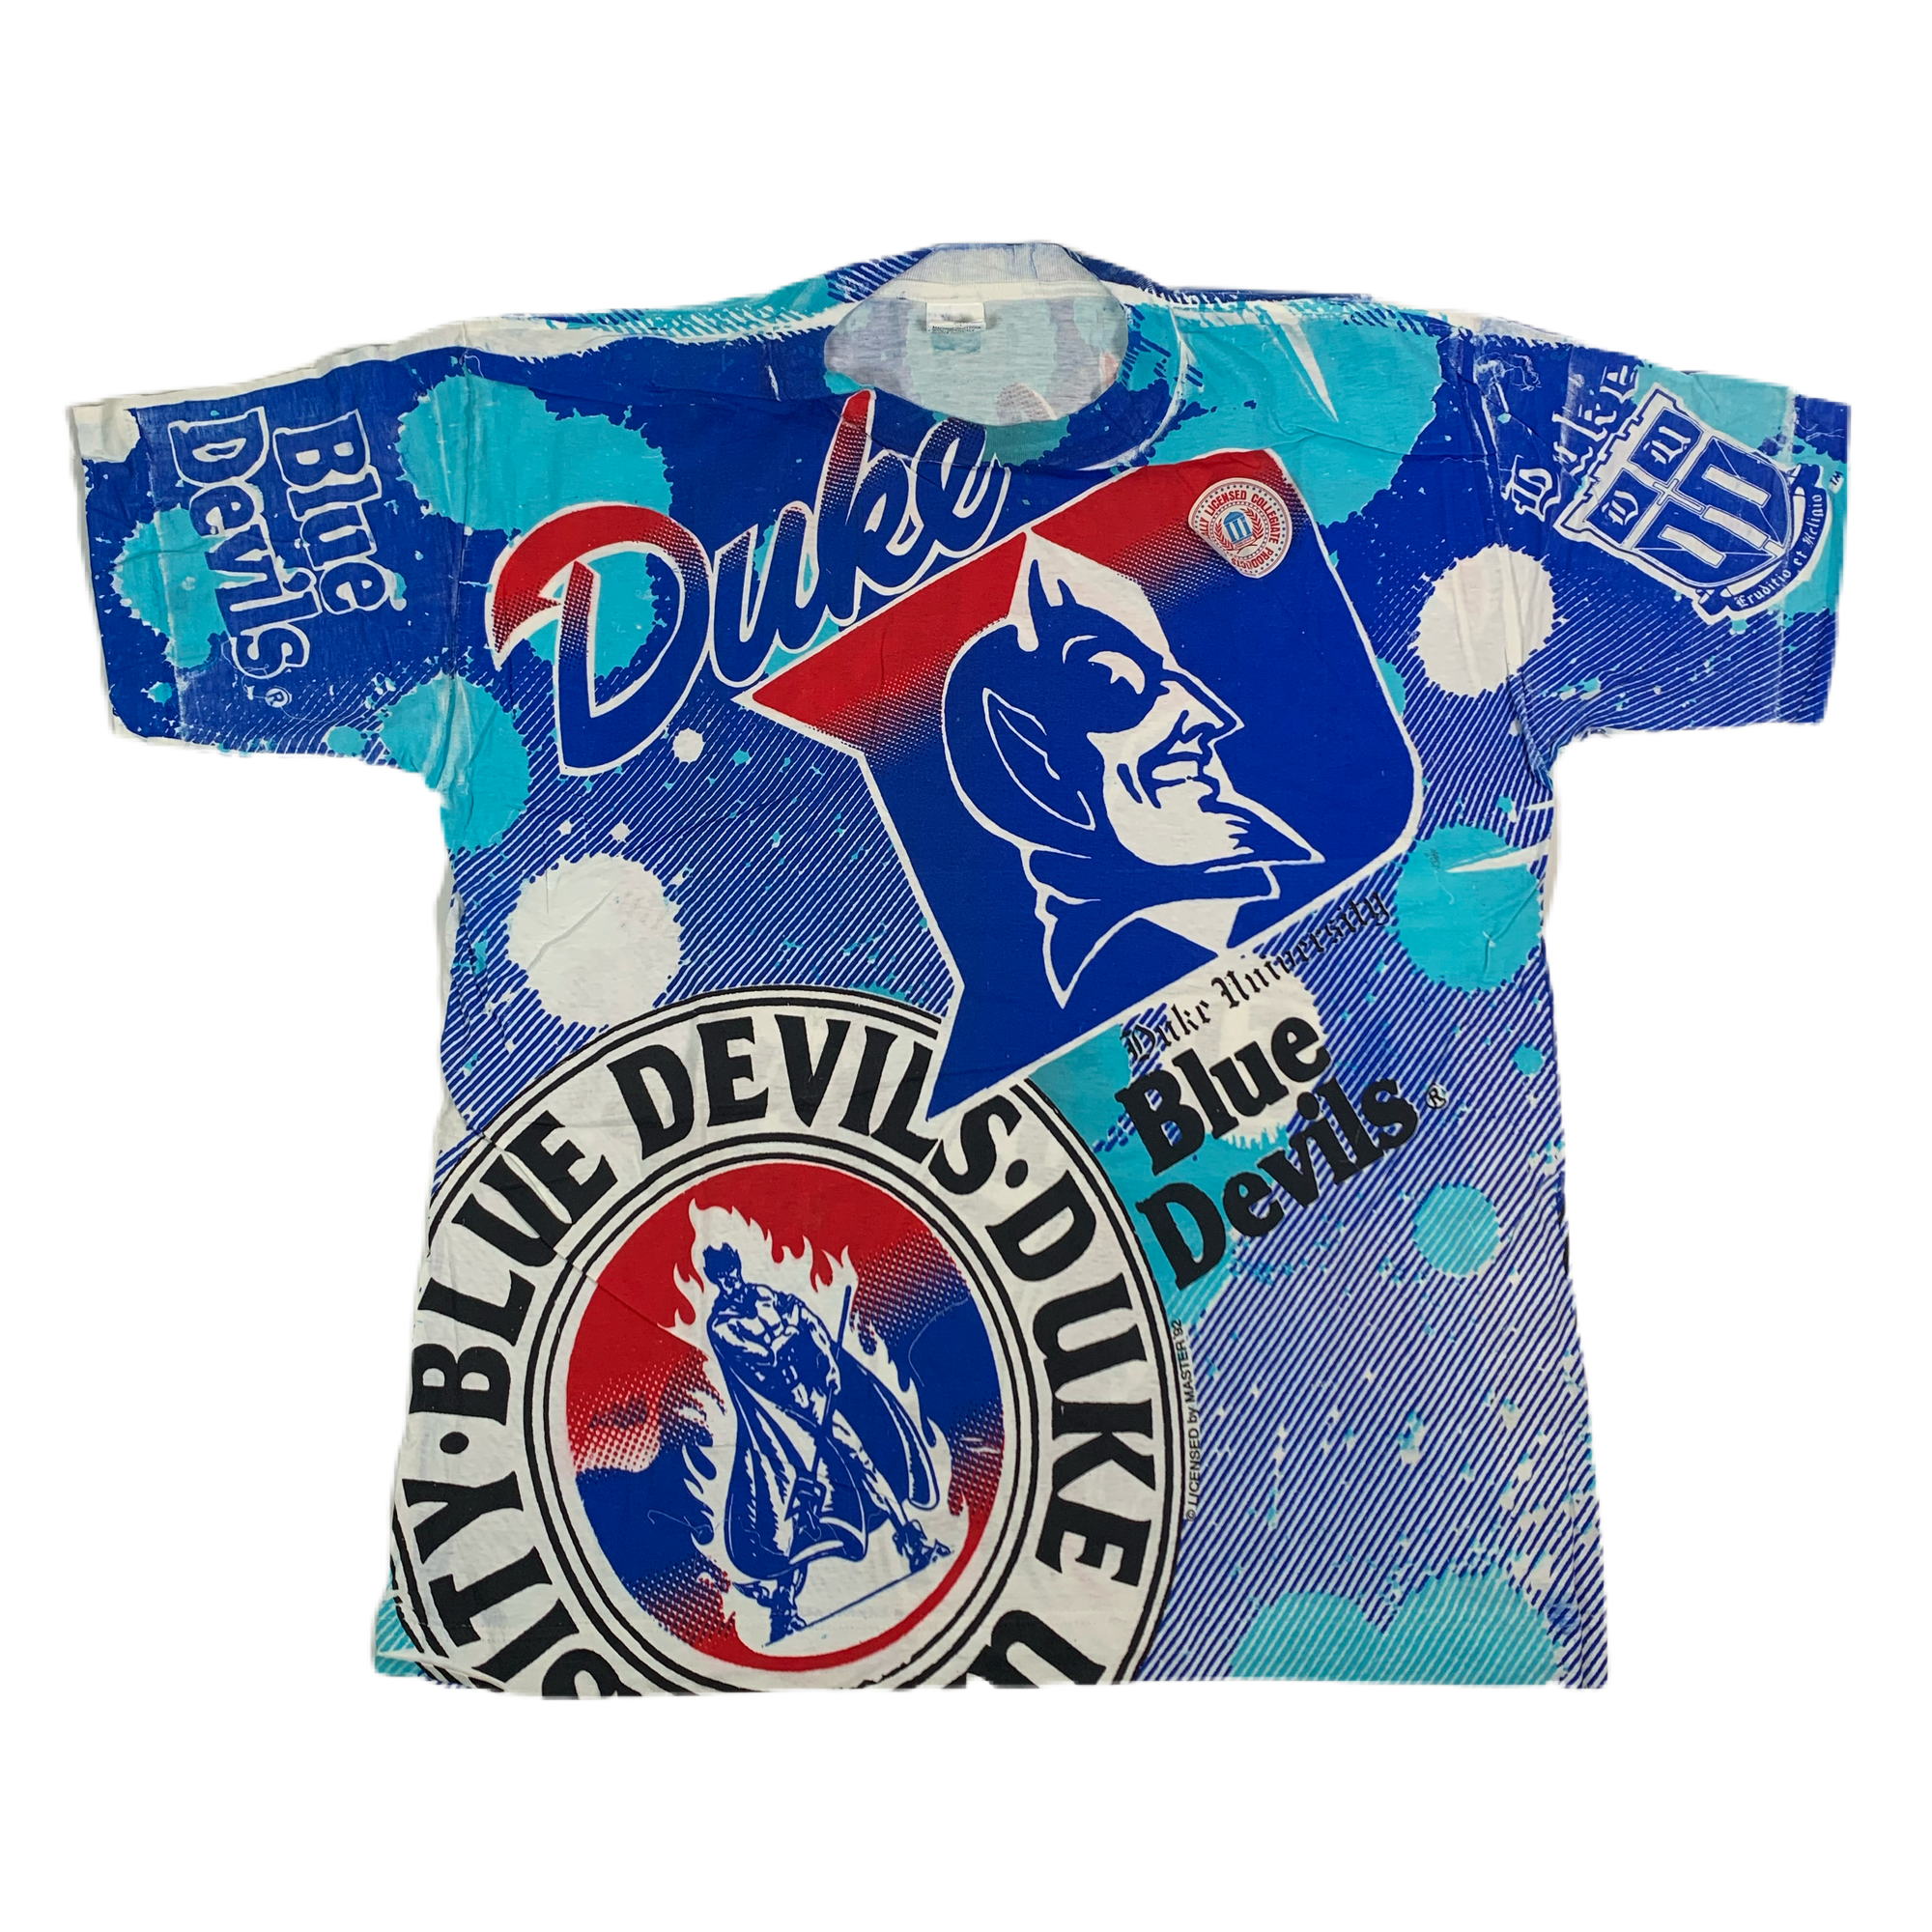 Vintage Duke University "Blue Devils" All Over Print T-Shirt - jointcustodydc